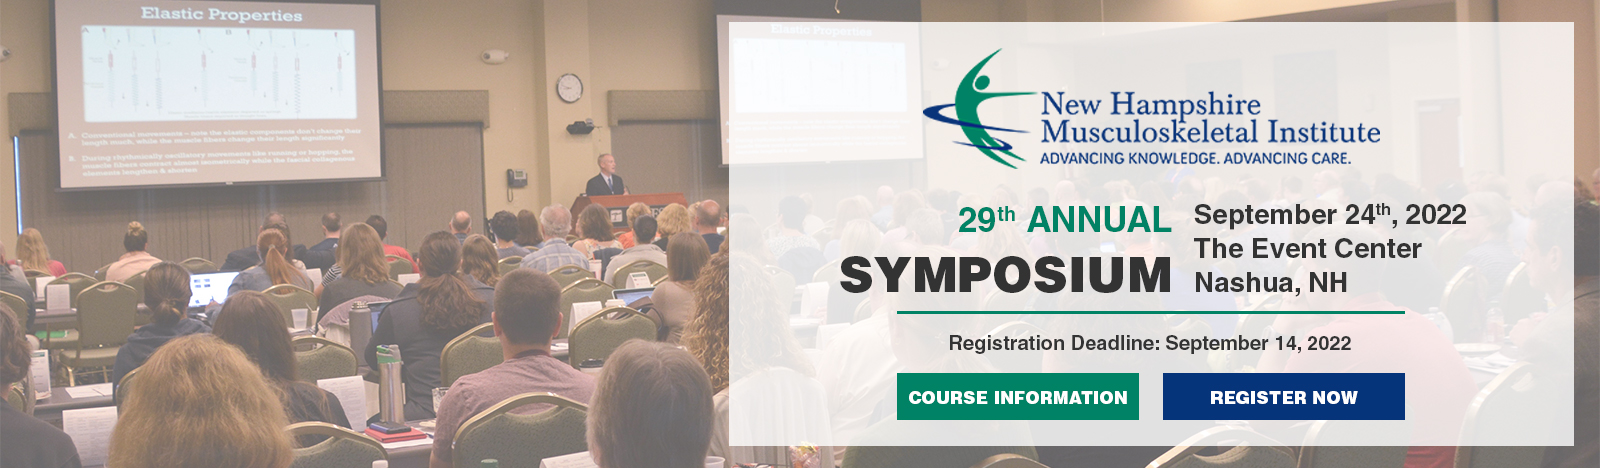 29th Annual Symposium